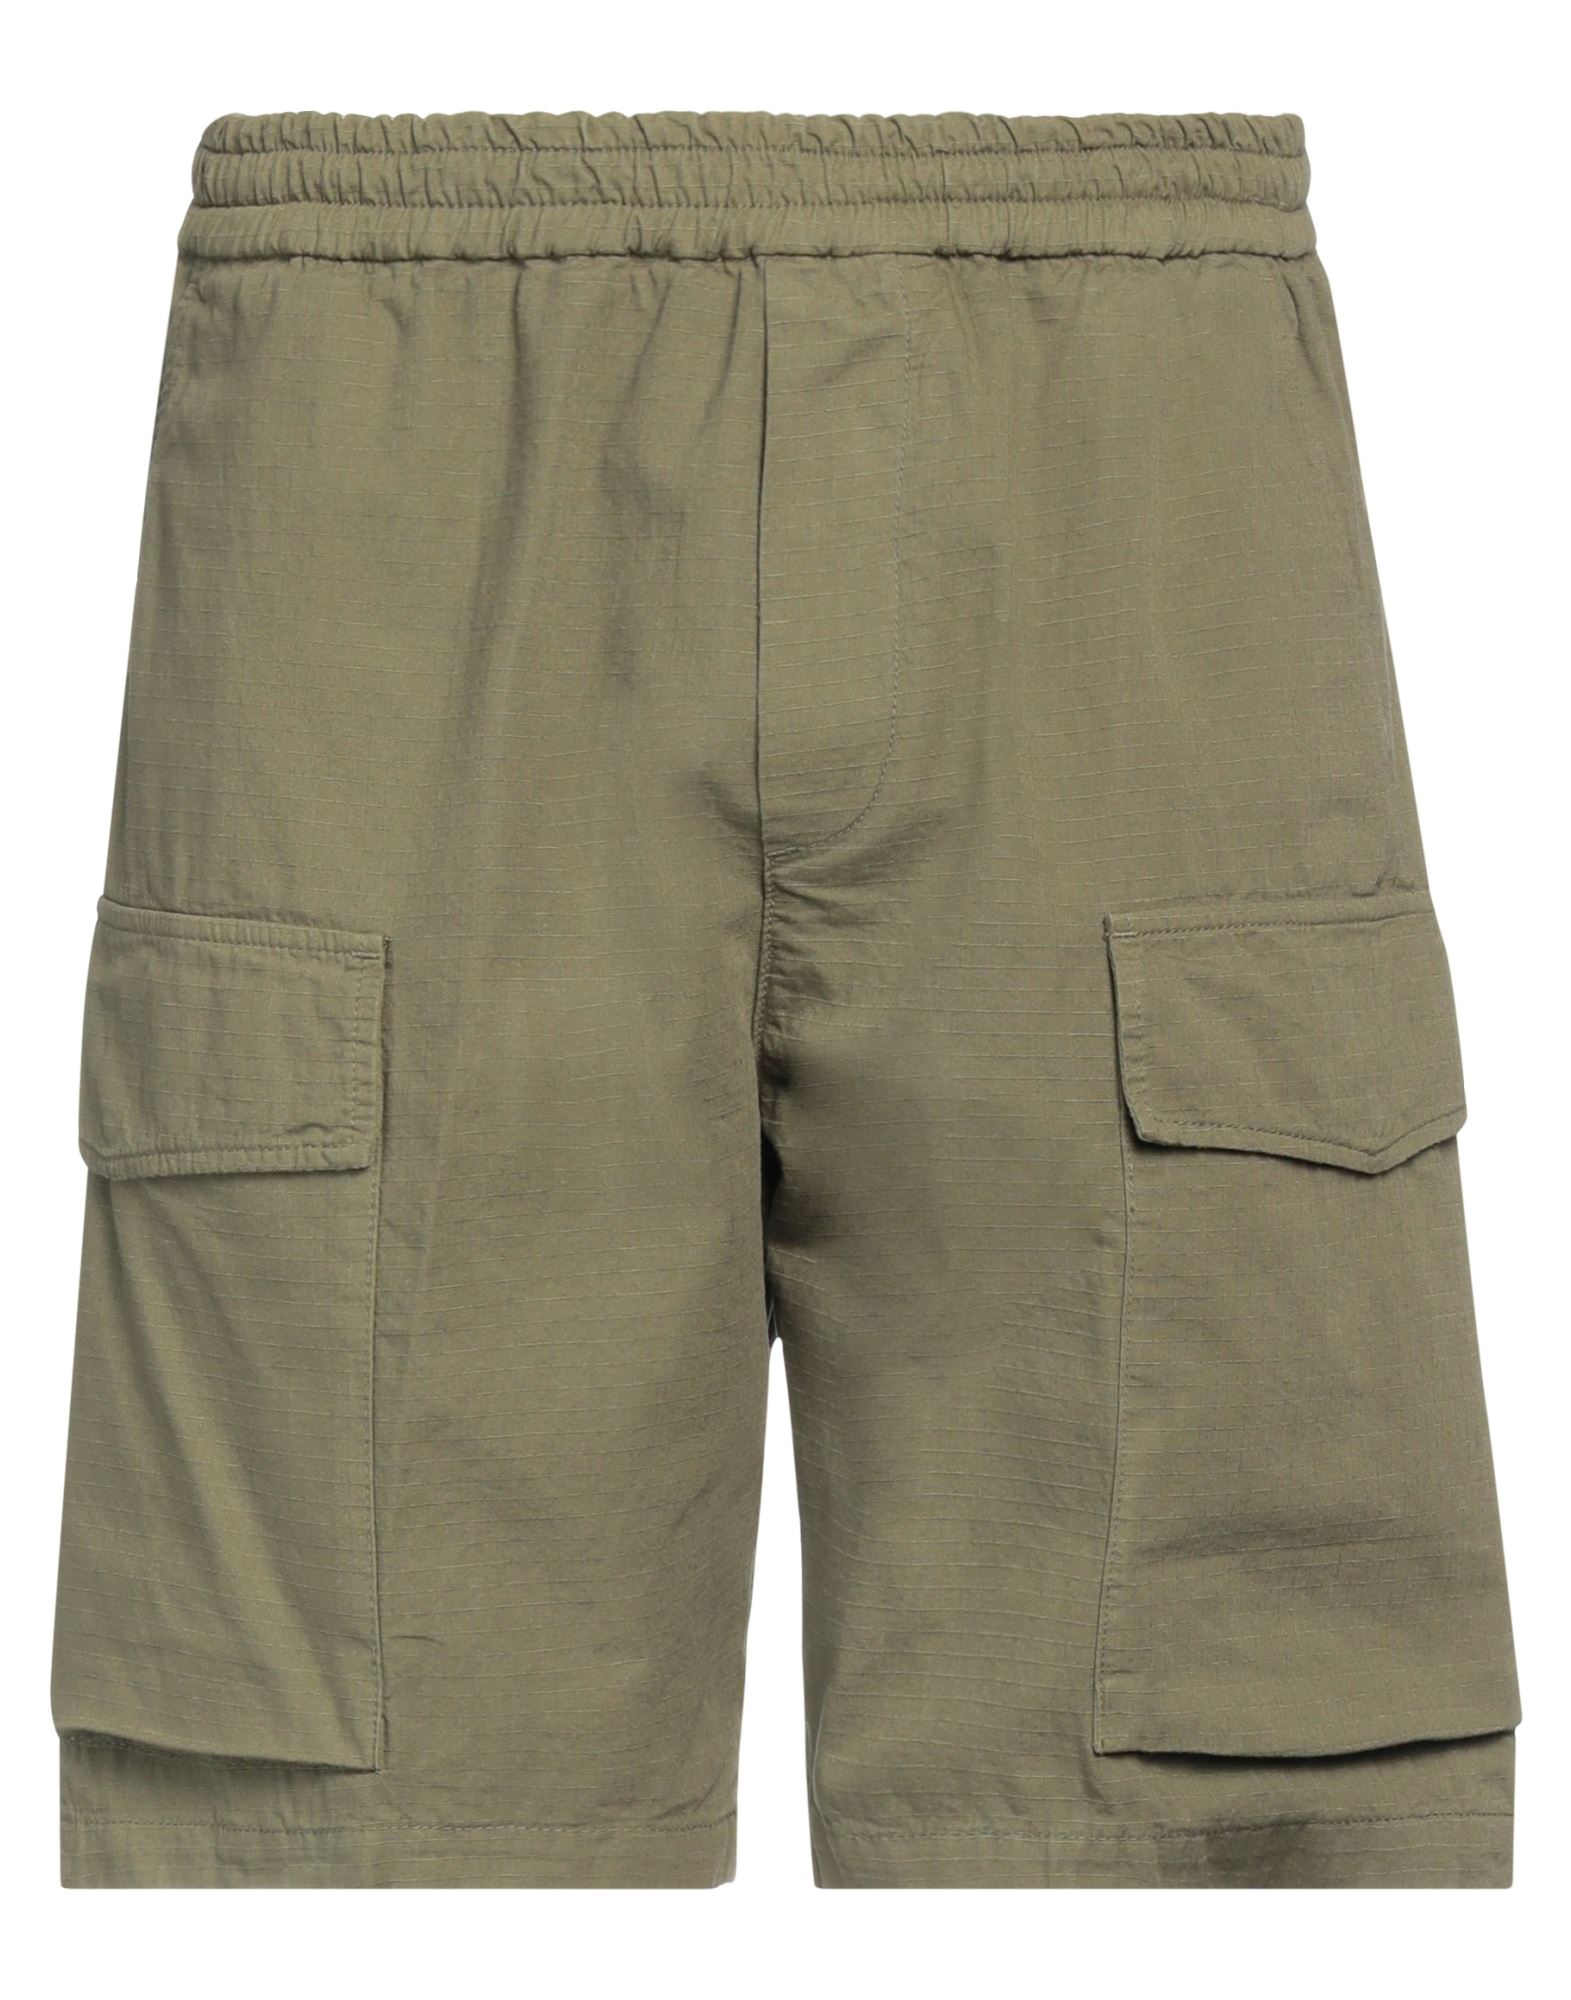 Cruna Man Shorts & Bermuda Shorts Military Green Size 36 Cotton